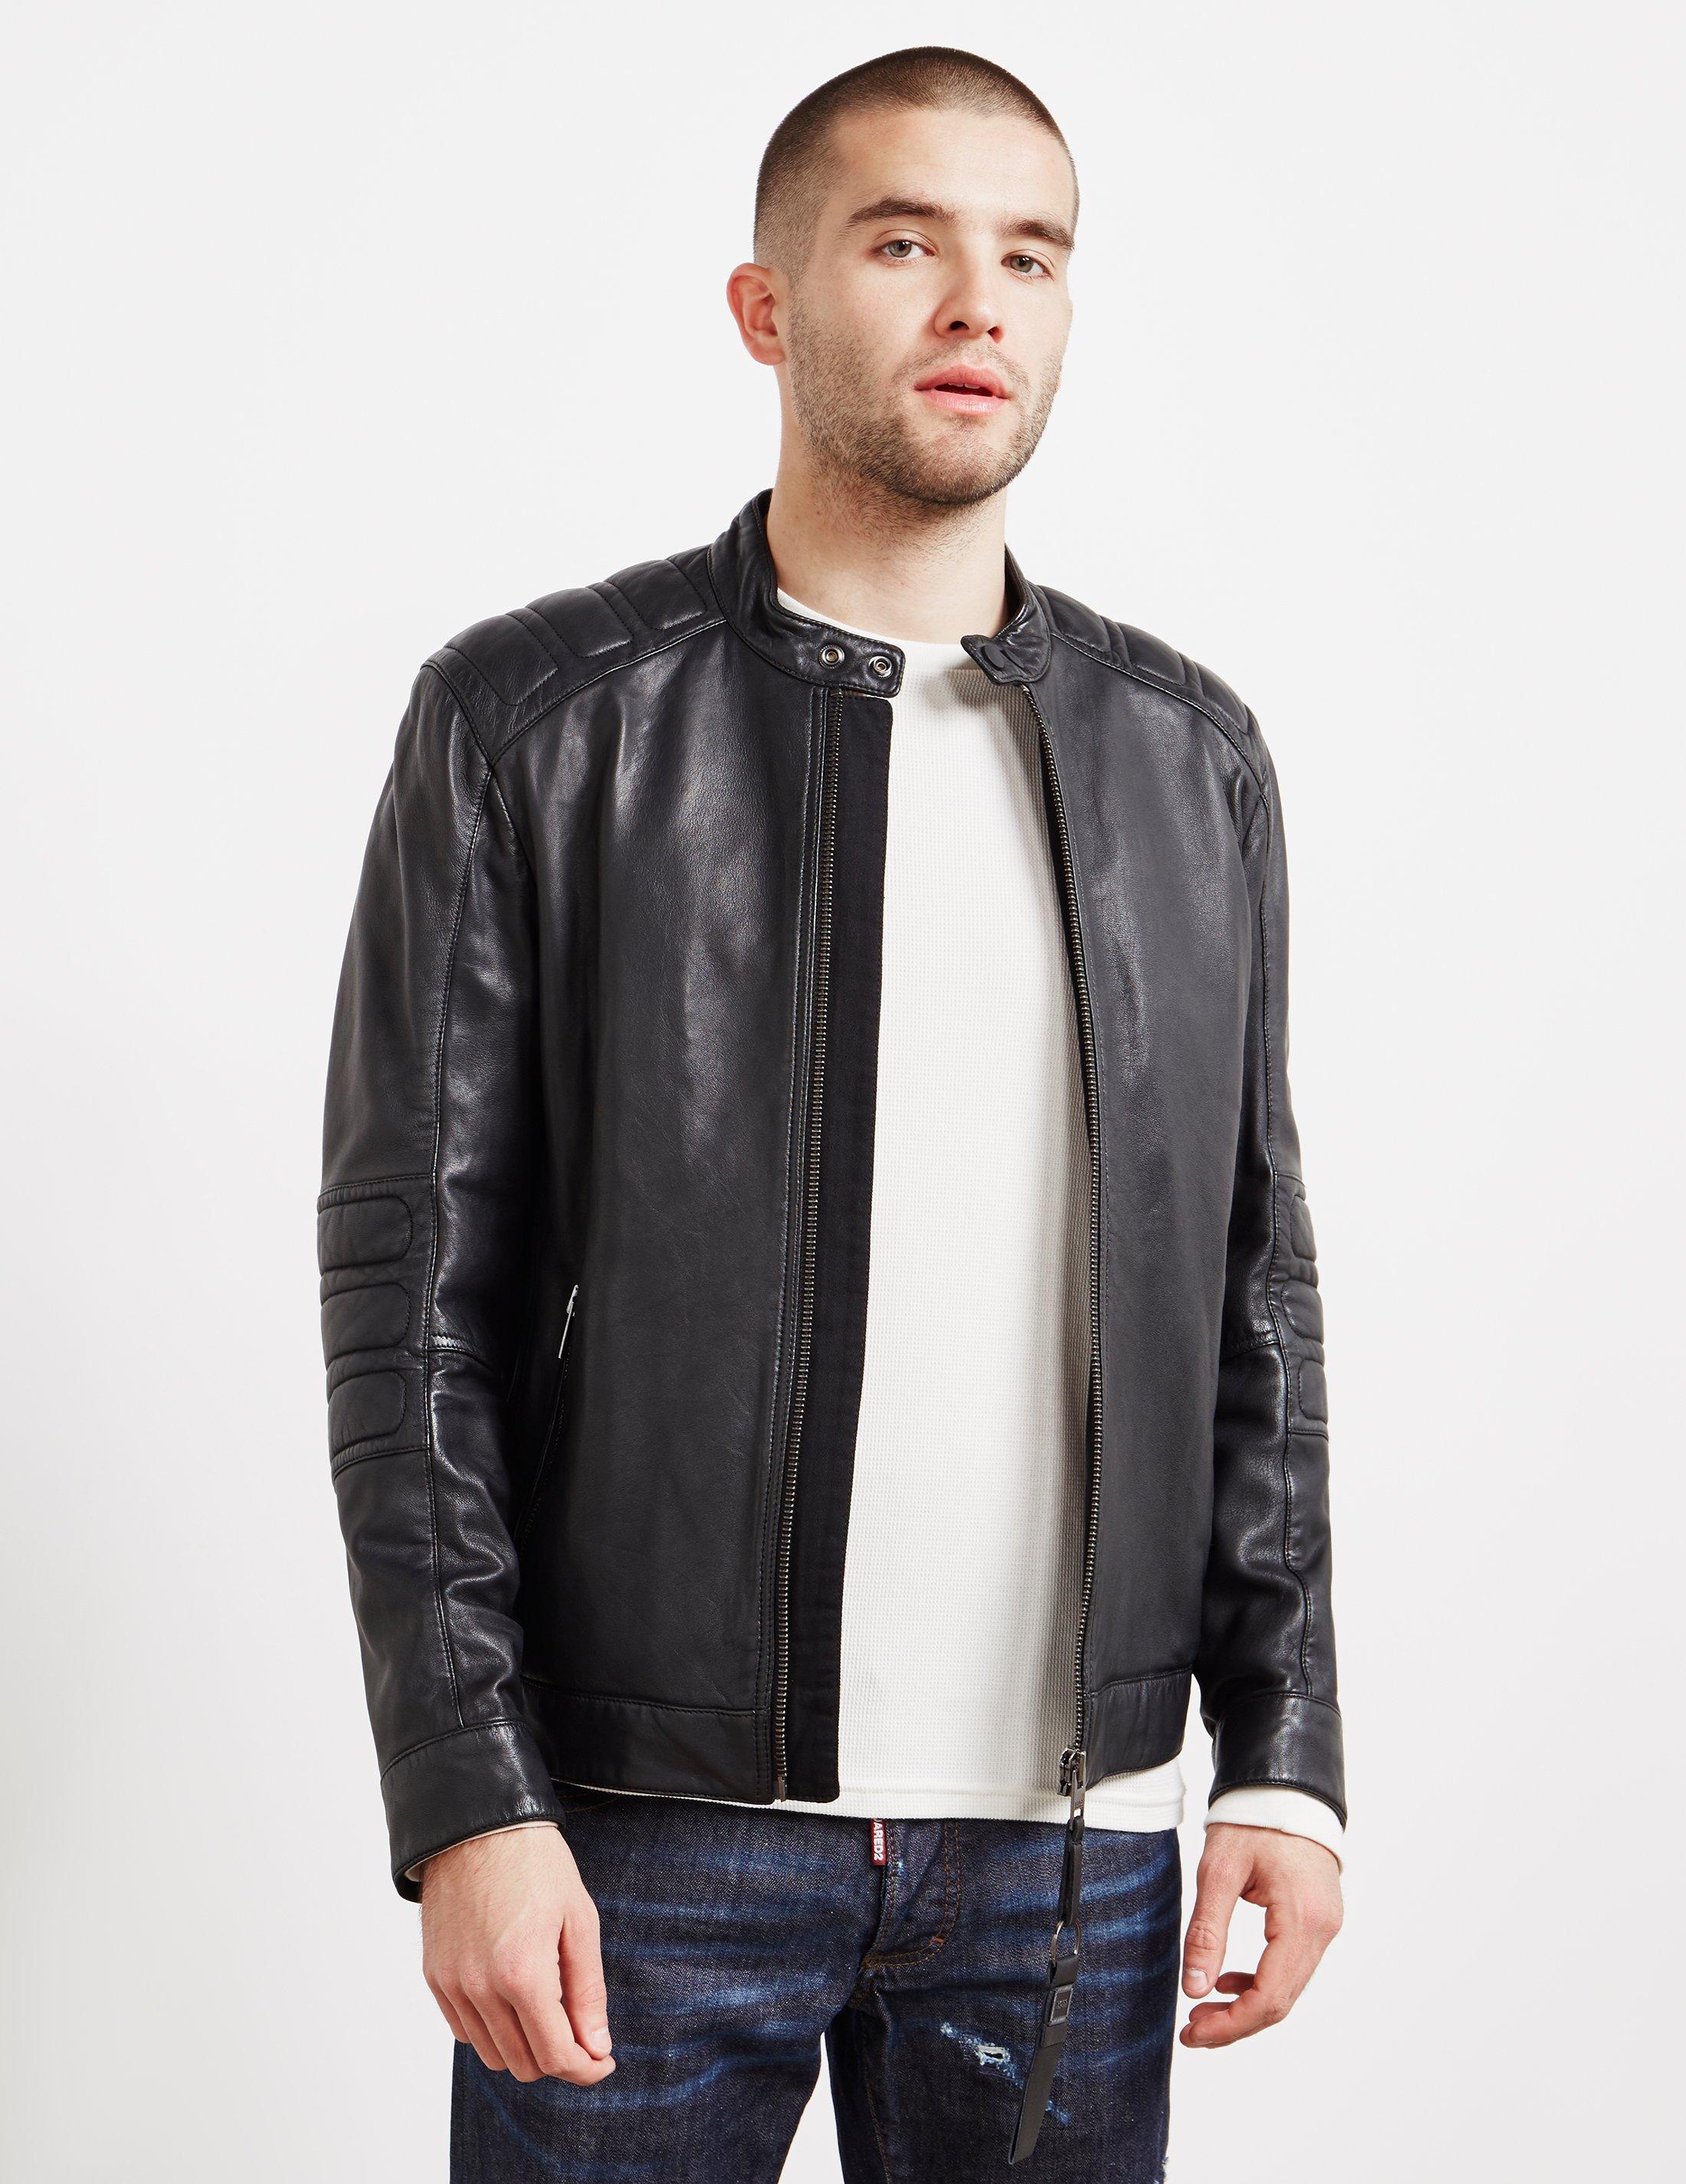 hugo boss lefox leather jacket